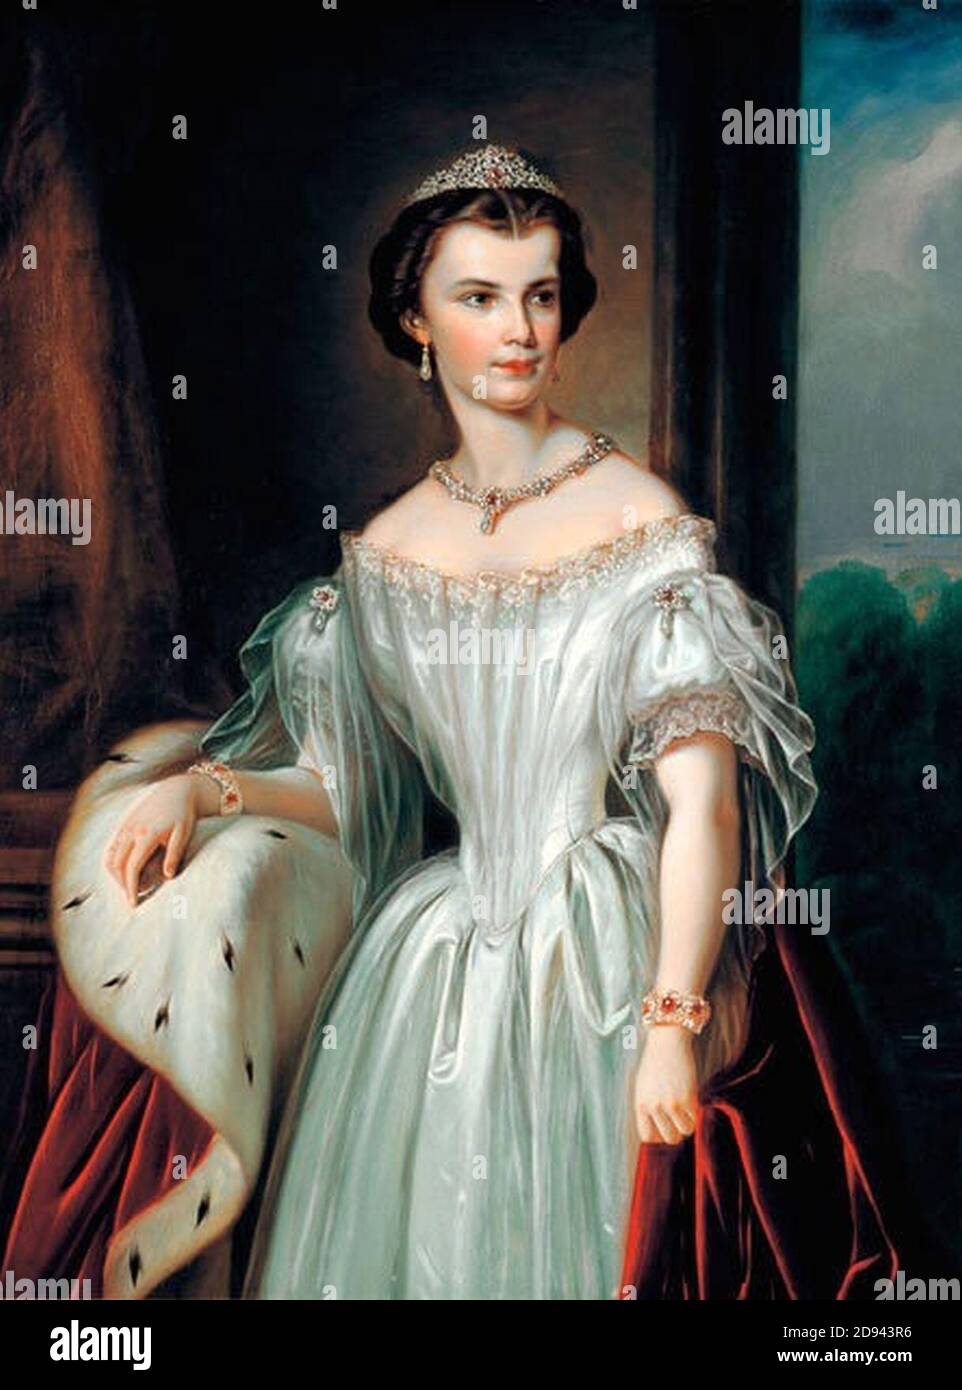 Kaiserin Elisabeth von Österreich und Königin von Ungarn Stock Photo - Alamy